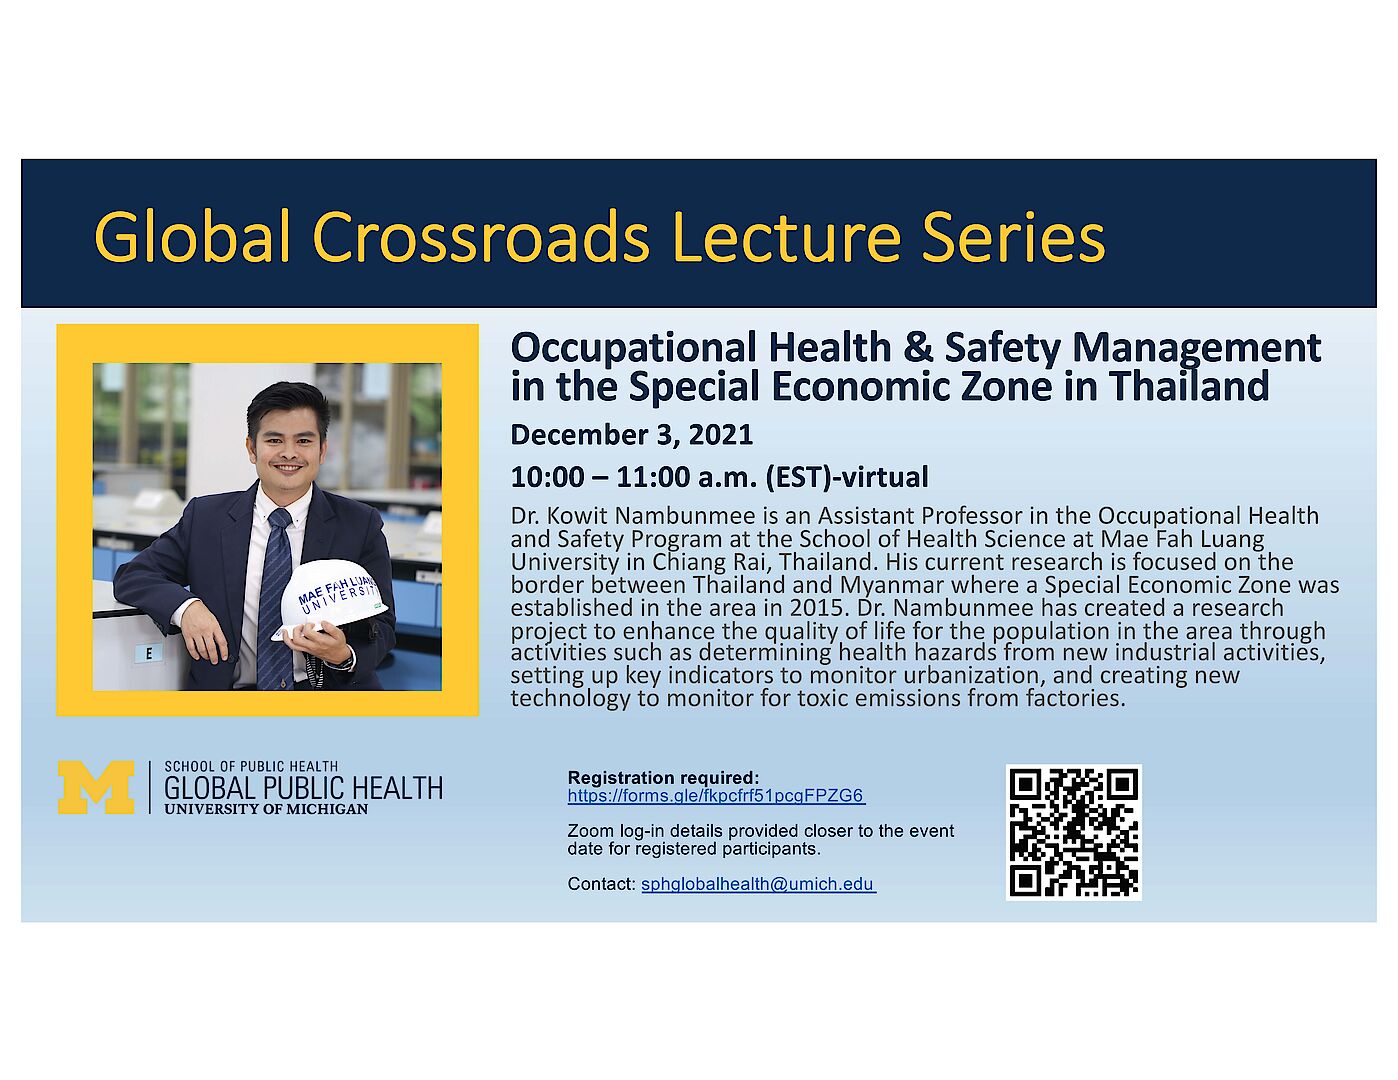 ขอเชิญเข้าร่วม กิจกรรม Global Crossroads Lecture Series ของ University of Michigan